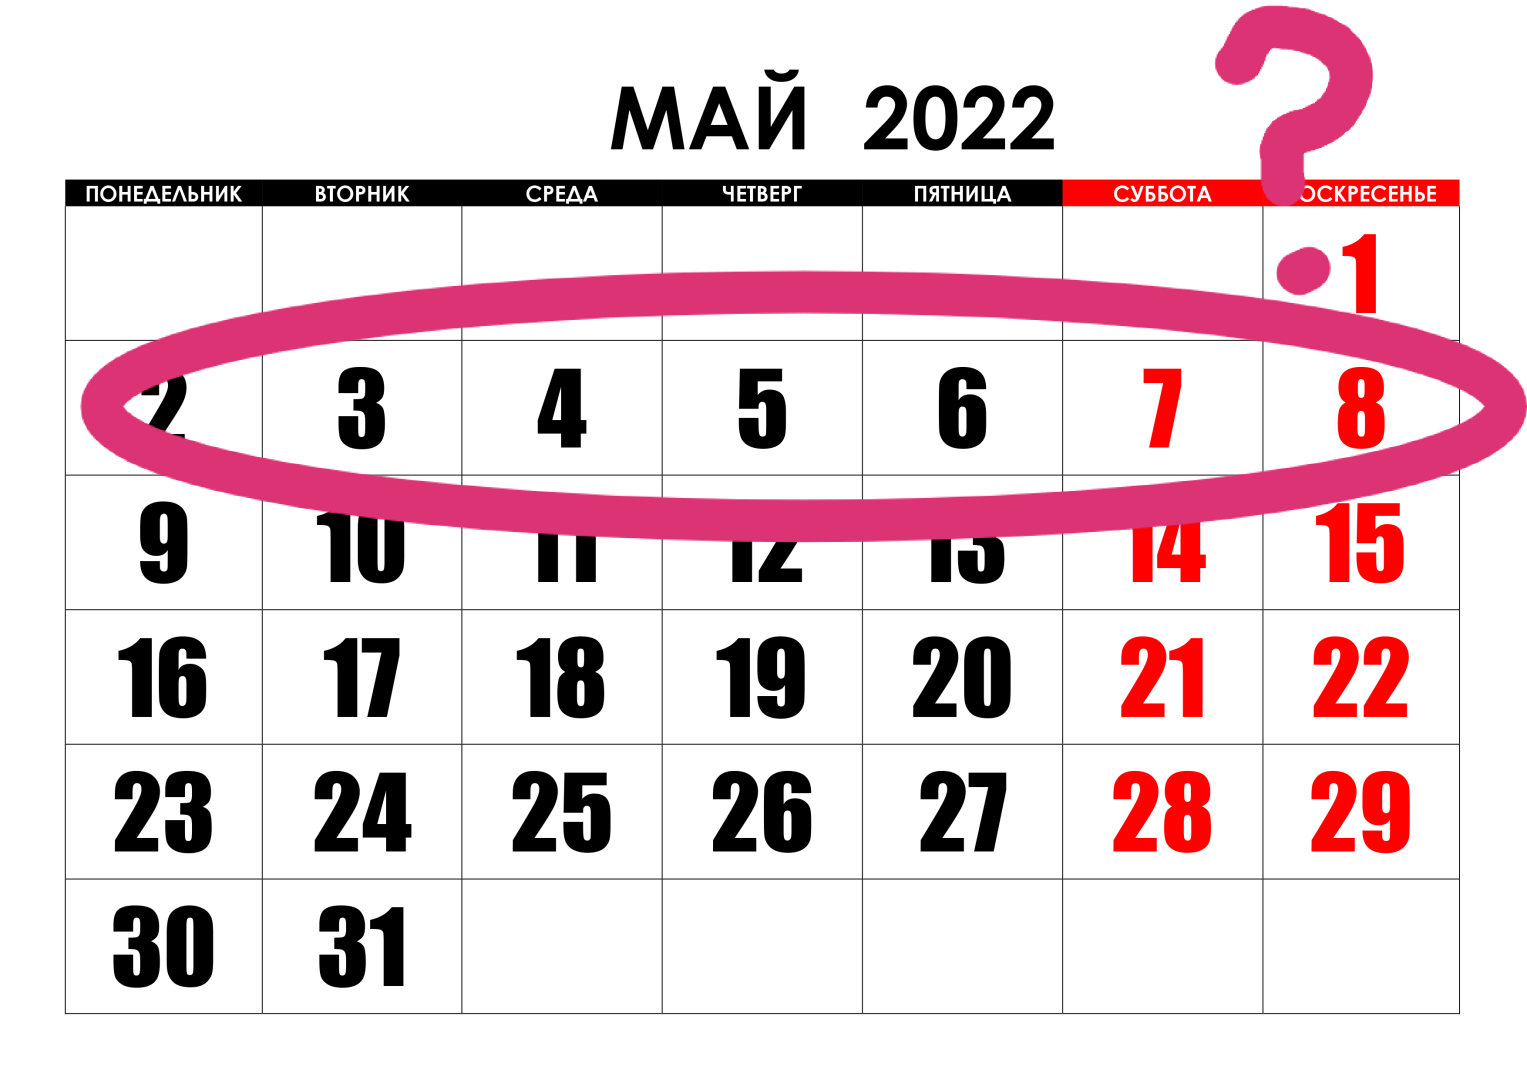 Как работаем и отдыхаем на майские. Майские праздники в 2022 году. Праздничные дни в мае 2022. Календарь праздников на май. Майские выходные в 2022 году.